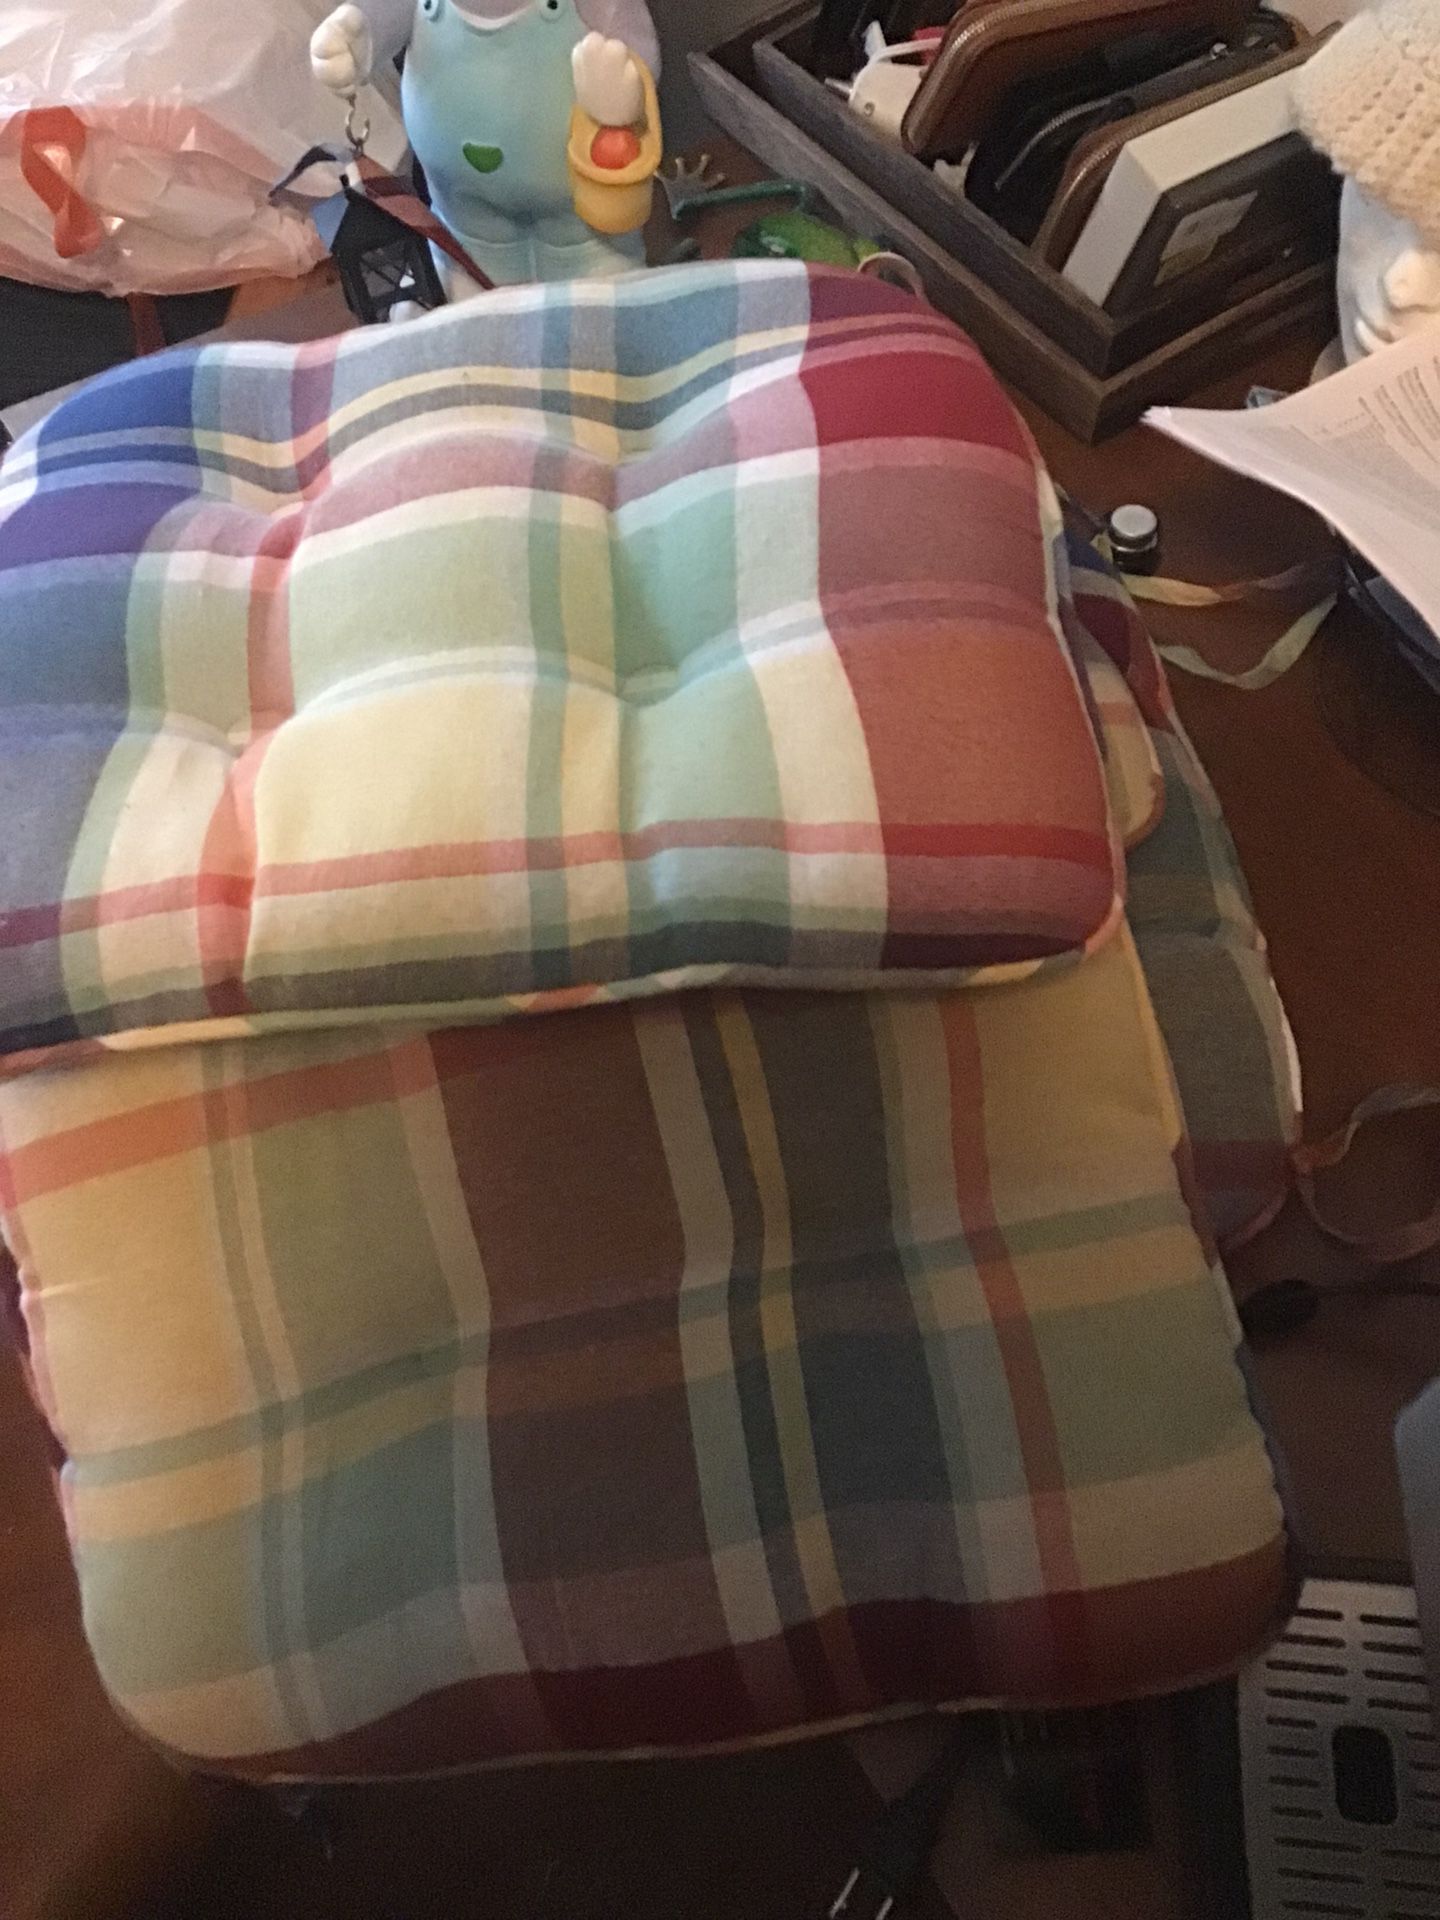 4 Chair Pillows 